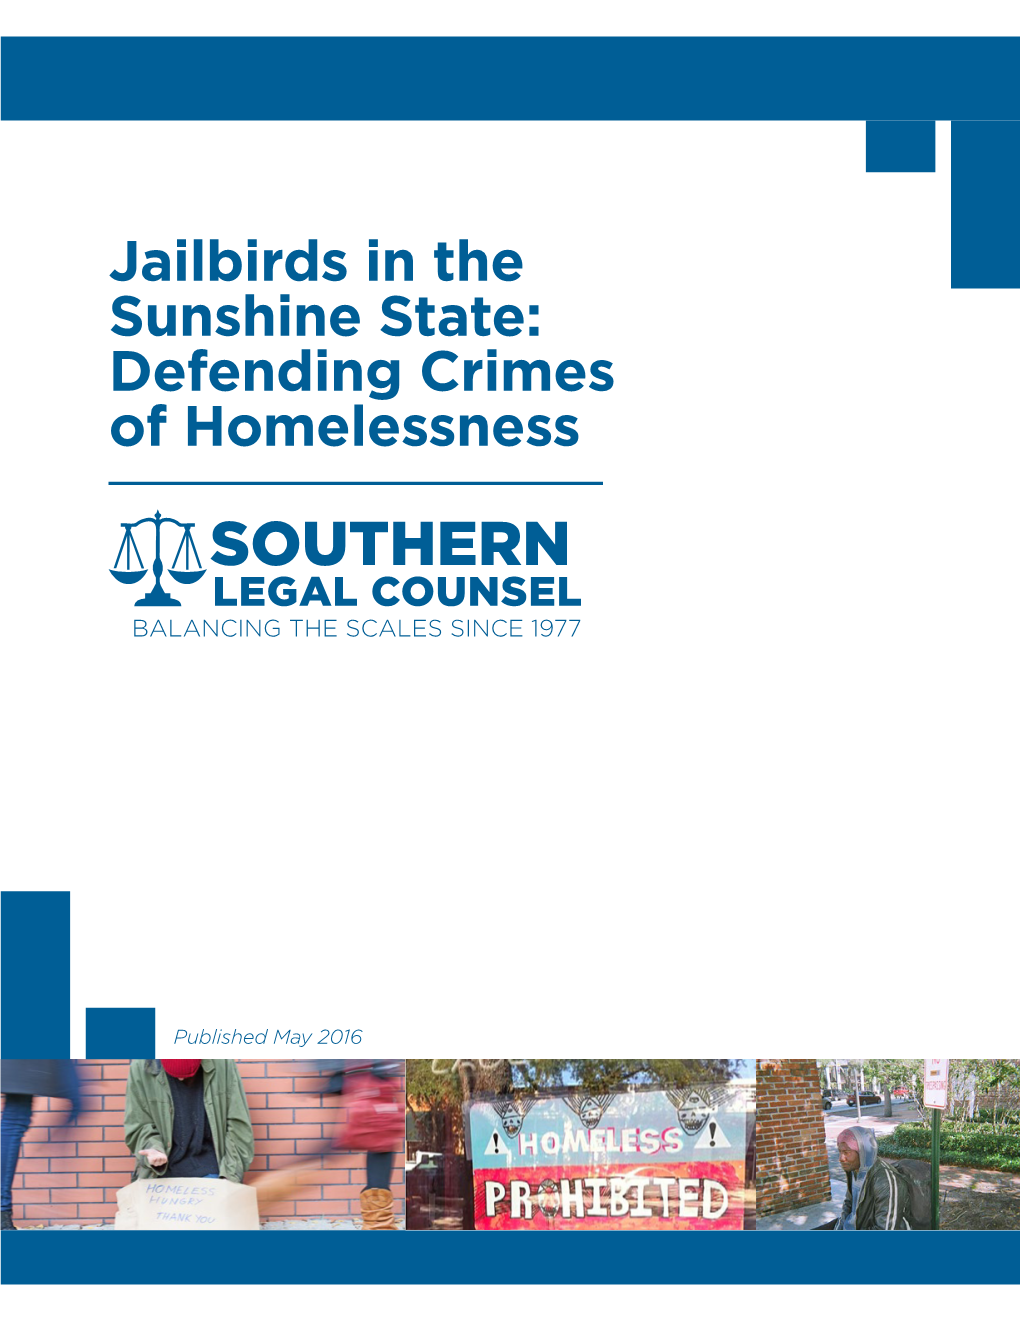 Jailbirds in the Sunshine State: Defending Crimes of Homelessness